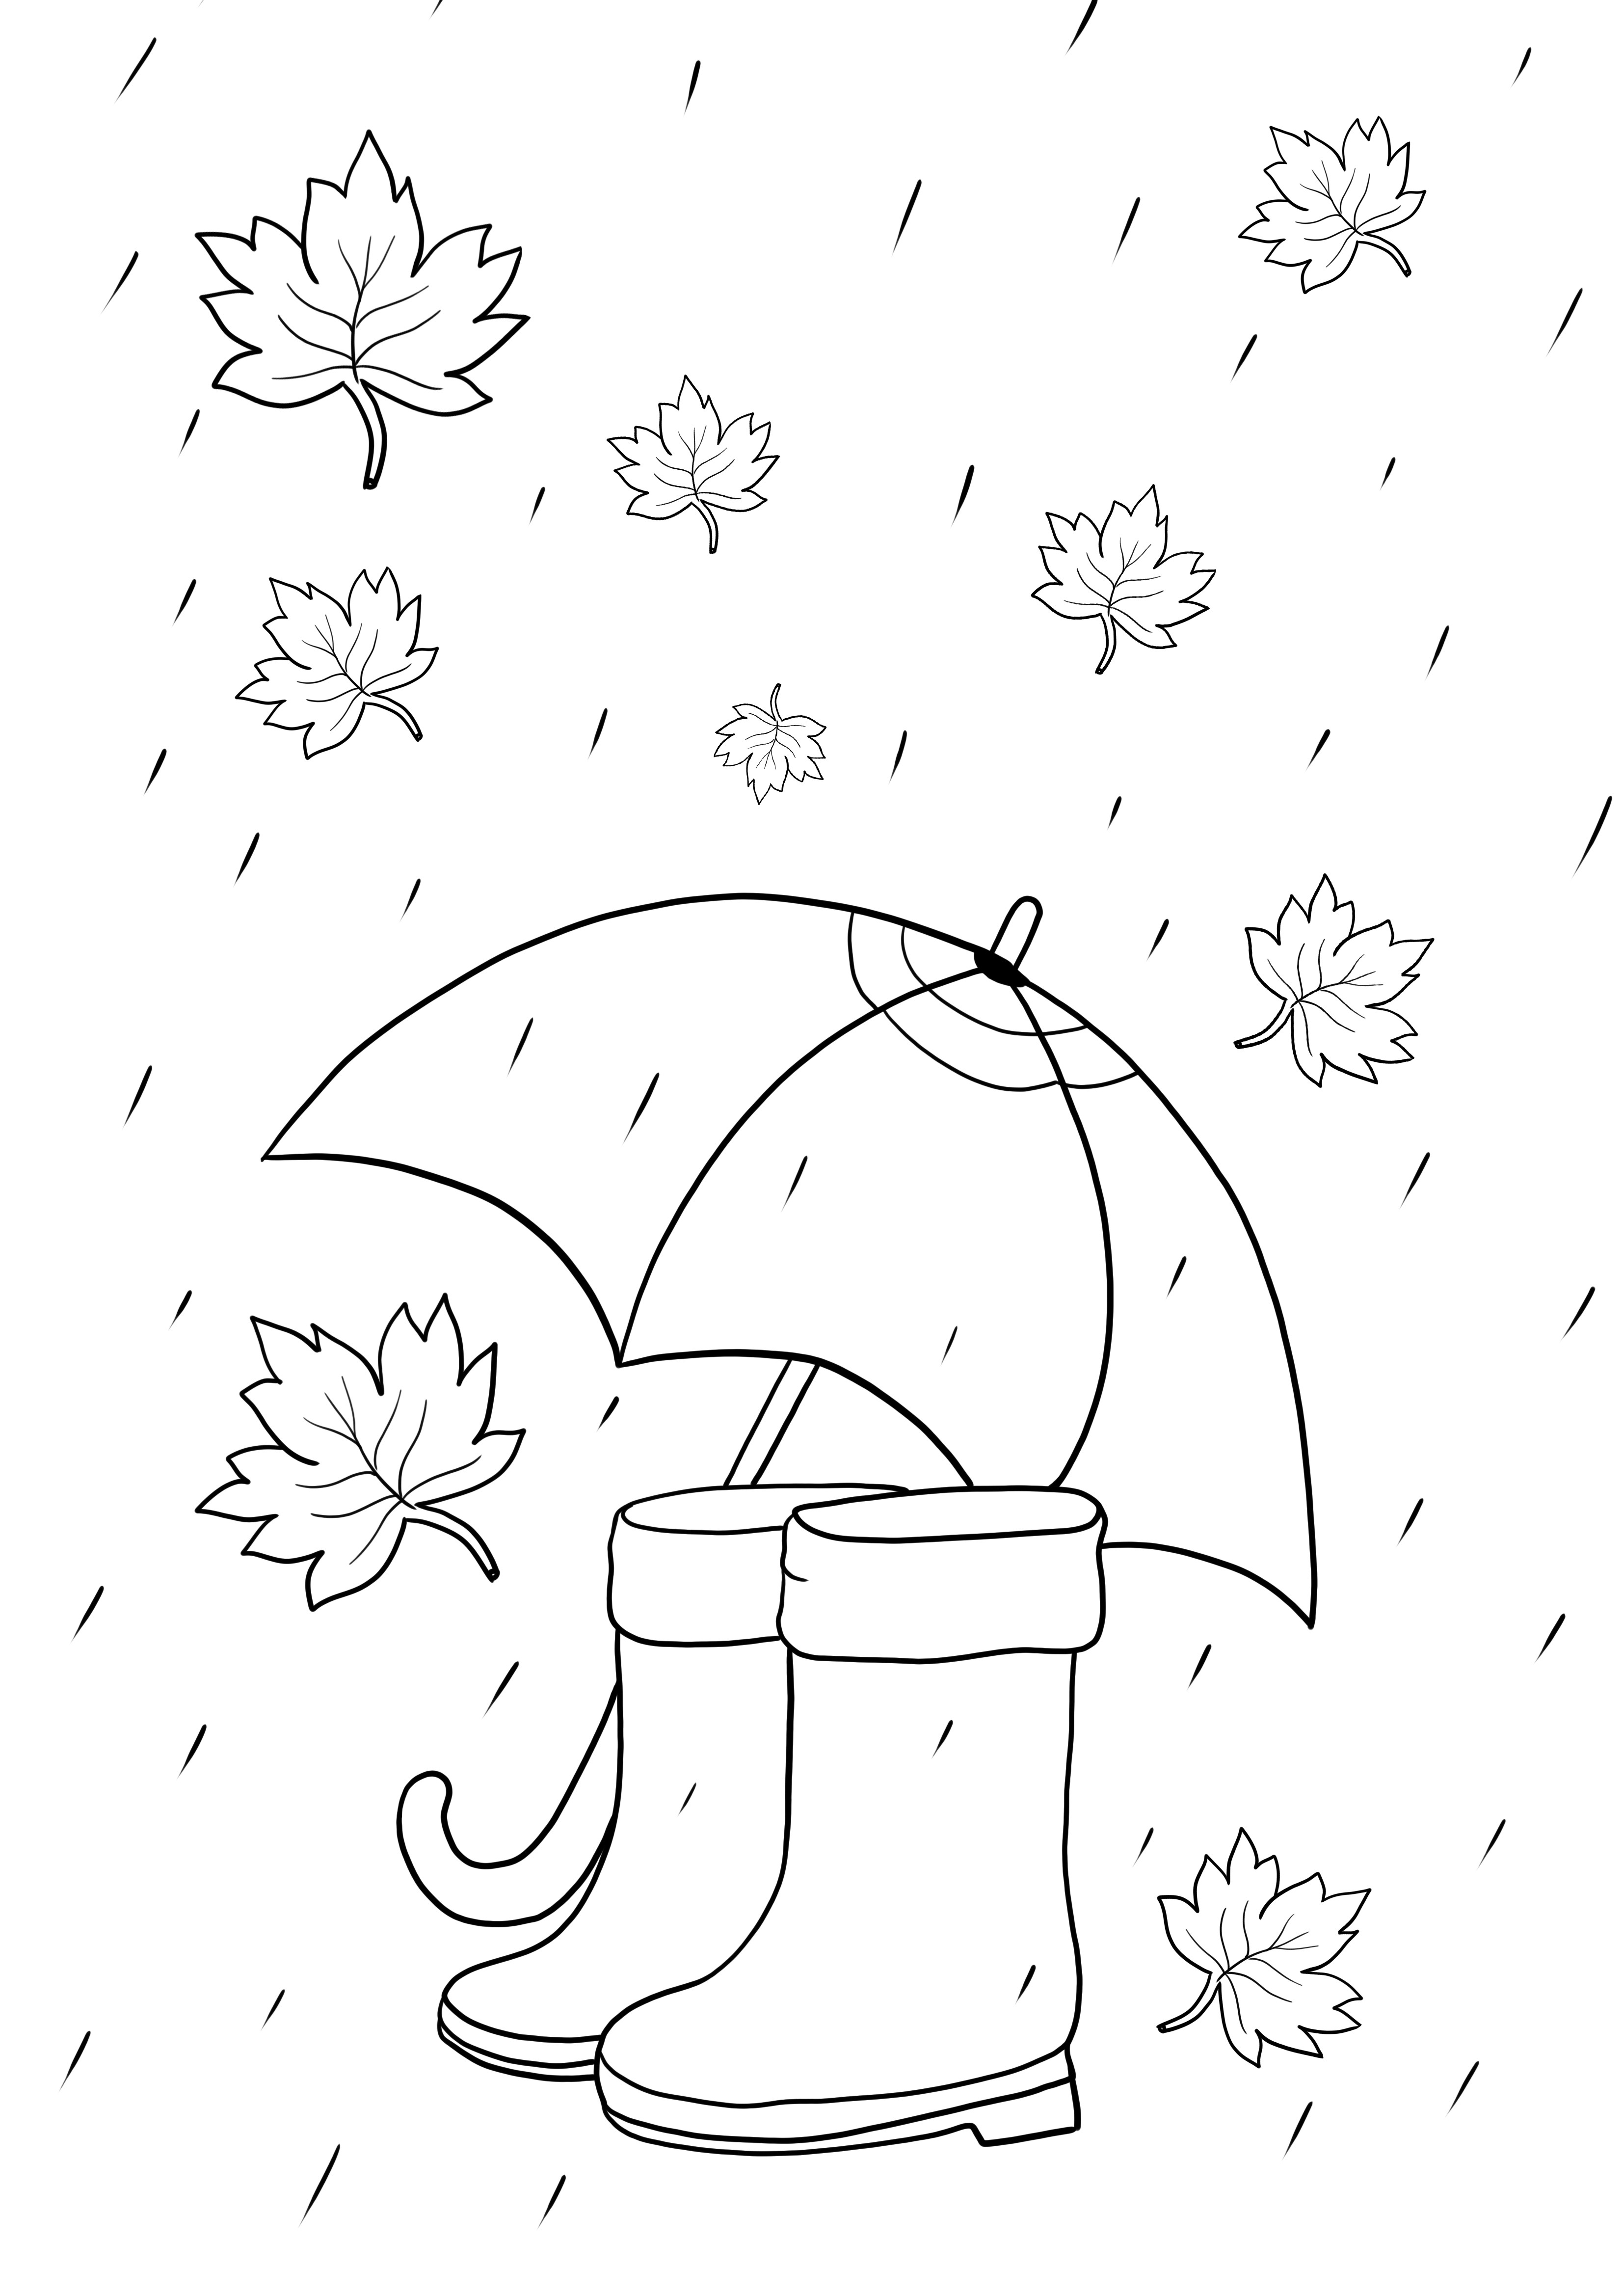 Elementy na deszczową pogodę – parasol i buty do wydrukowania lub pobrania za darmo